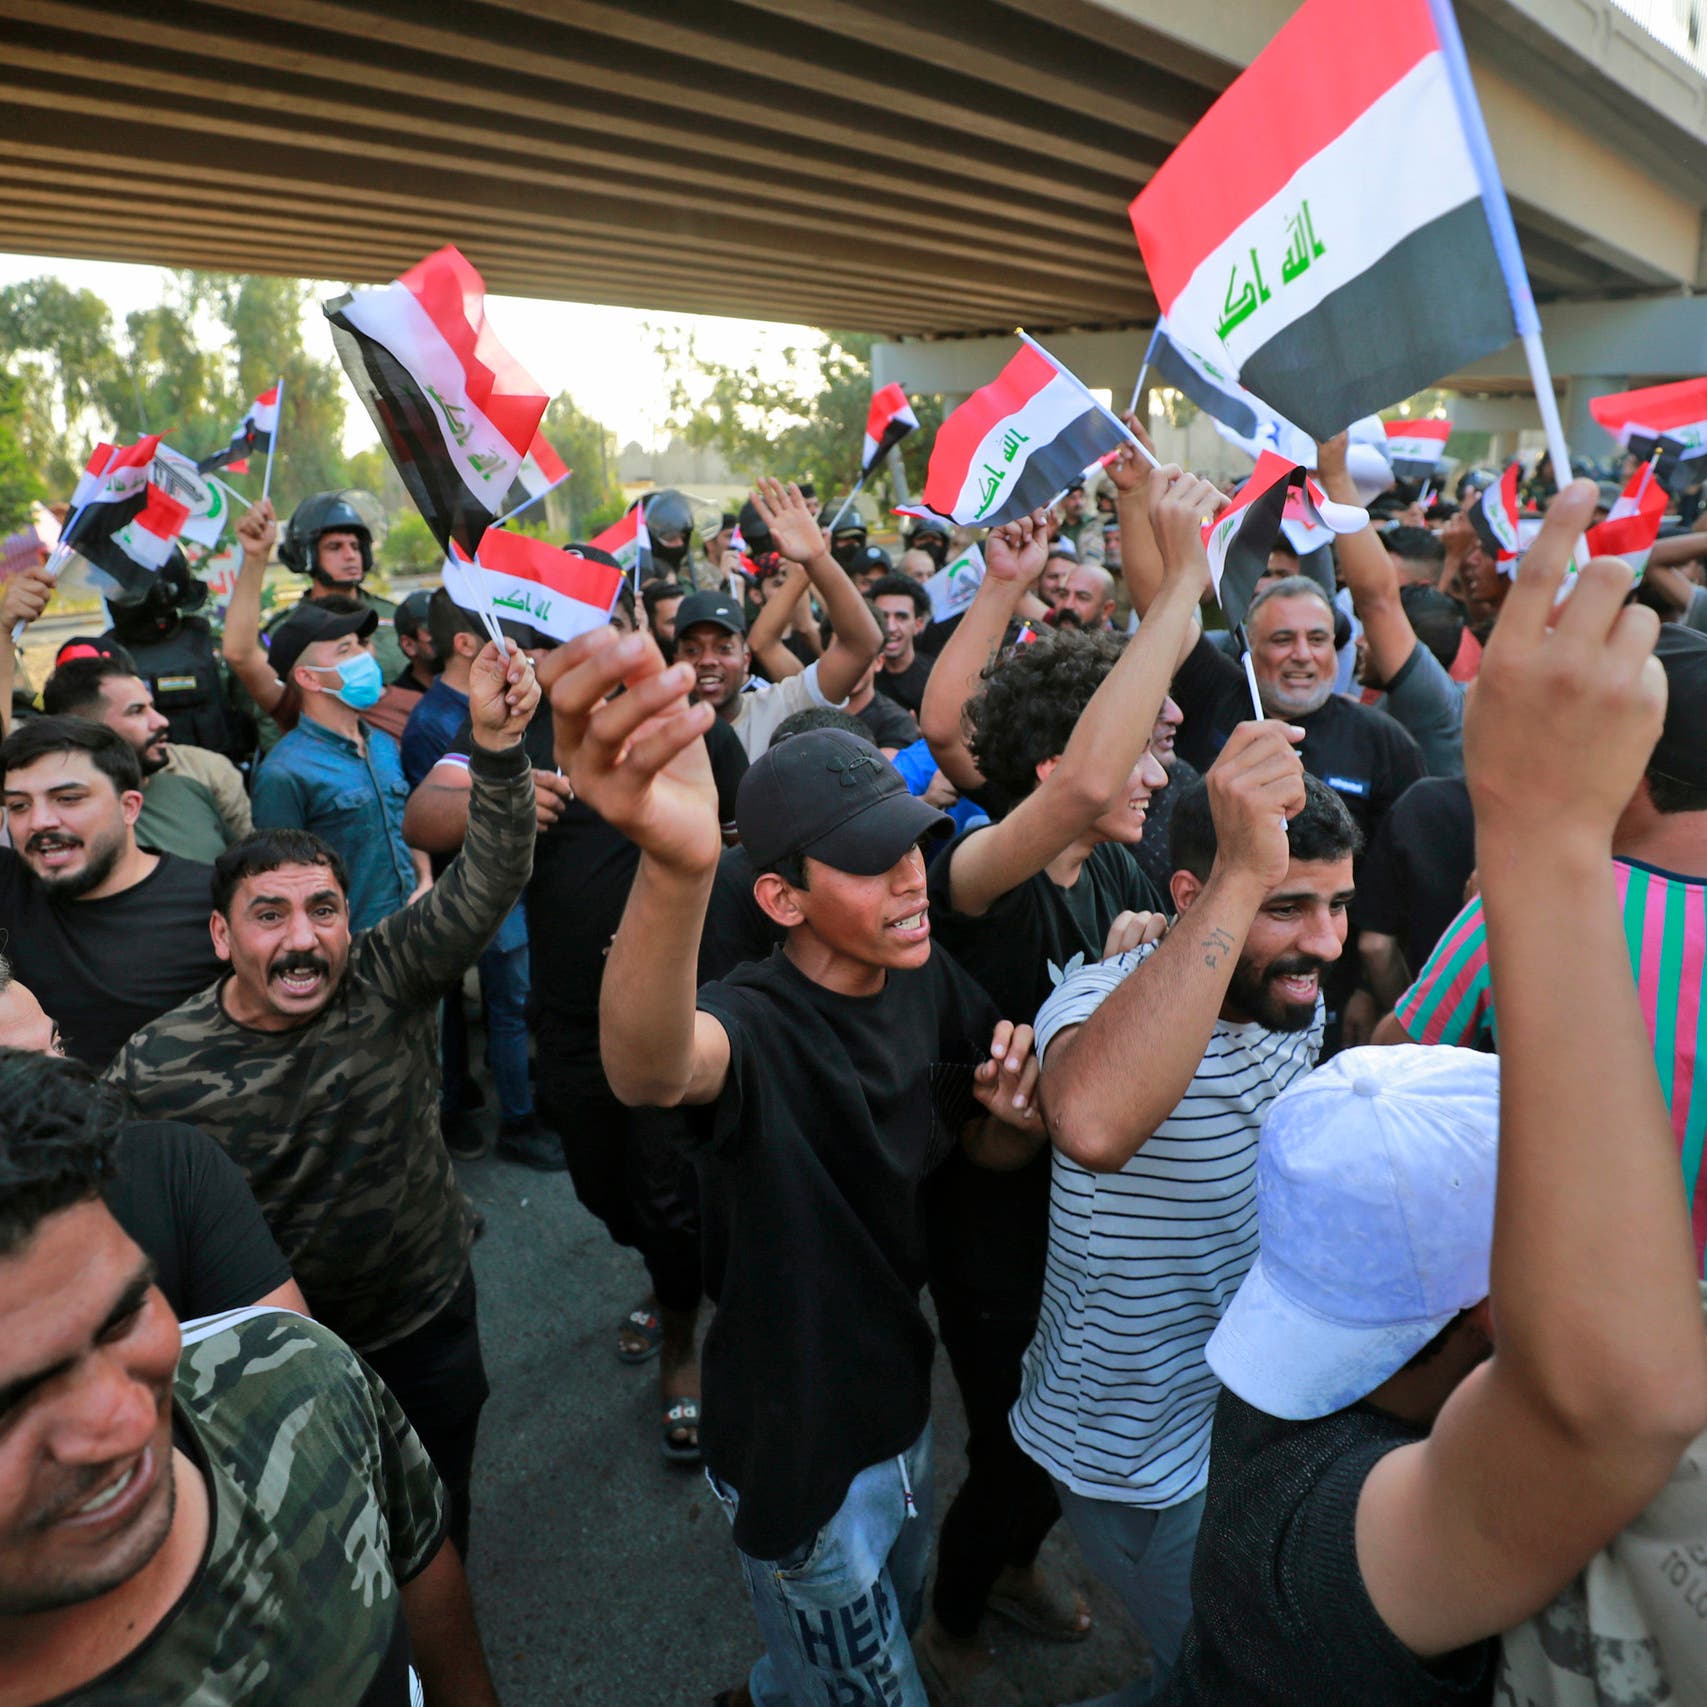 مصدر أمني عراقي: مقتل متظاهر بالرصاص خلال الاحتجاجات في بغداد